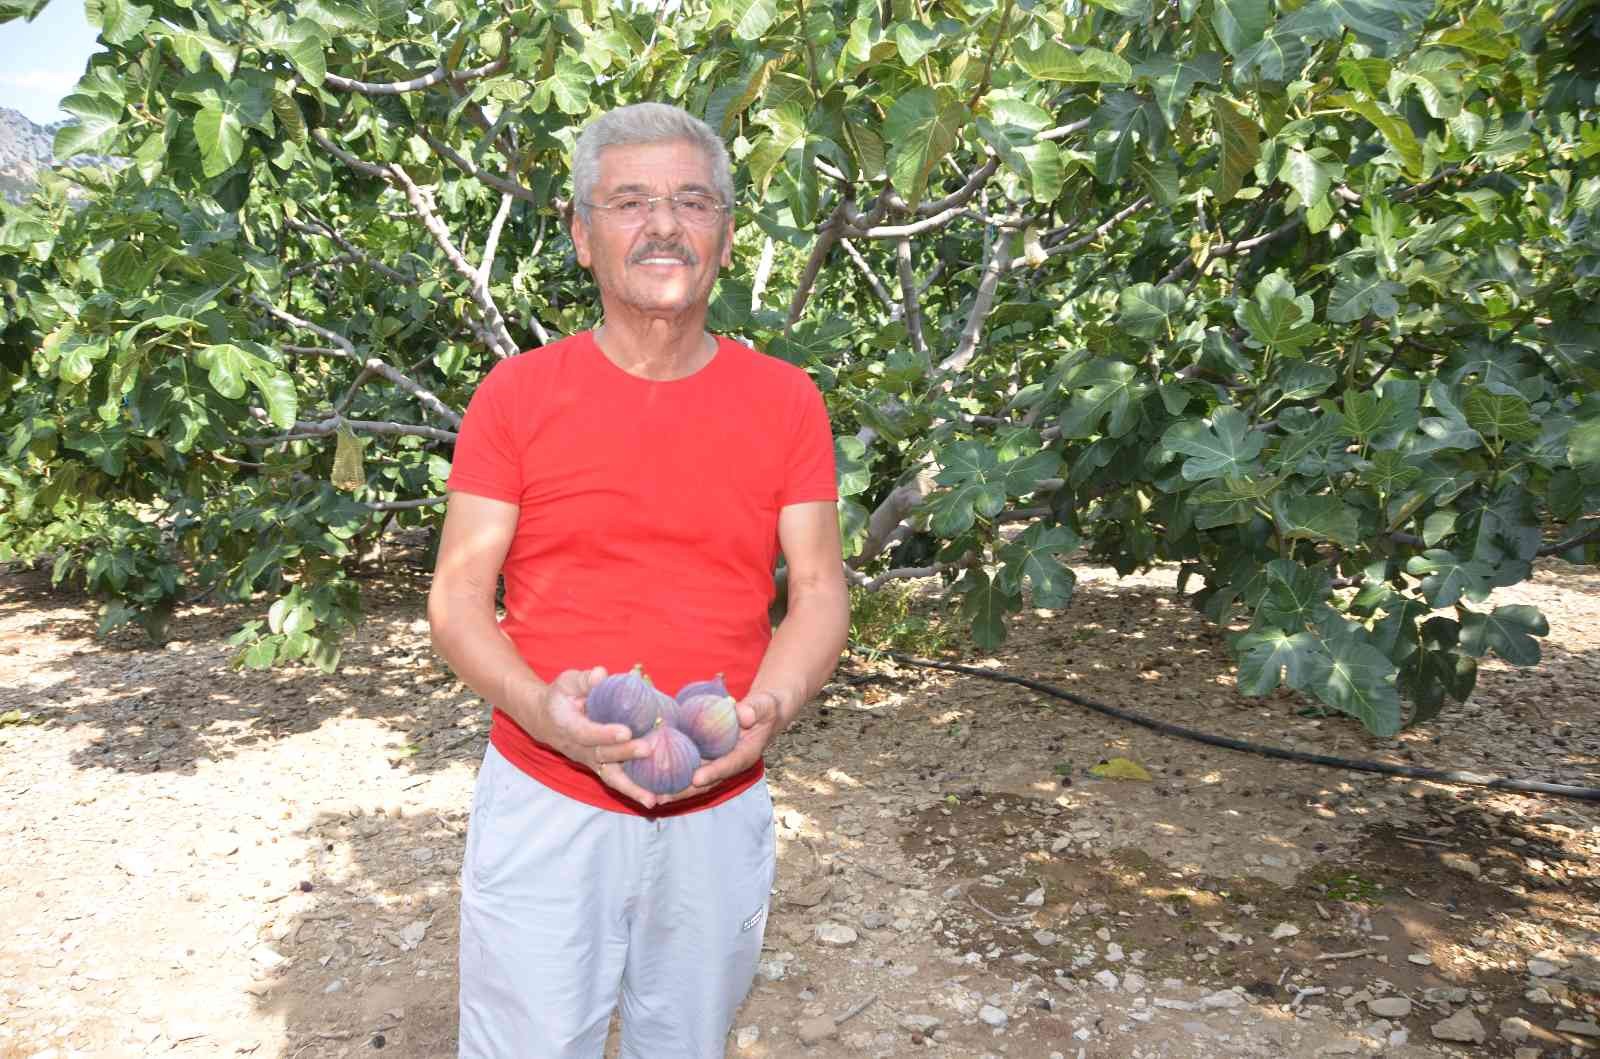 İbradı ilçesi Ürünlü köyünde yetişen siyah incirde hasat dönemi tamamlandı.